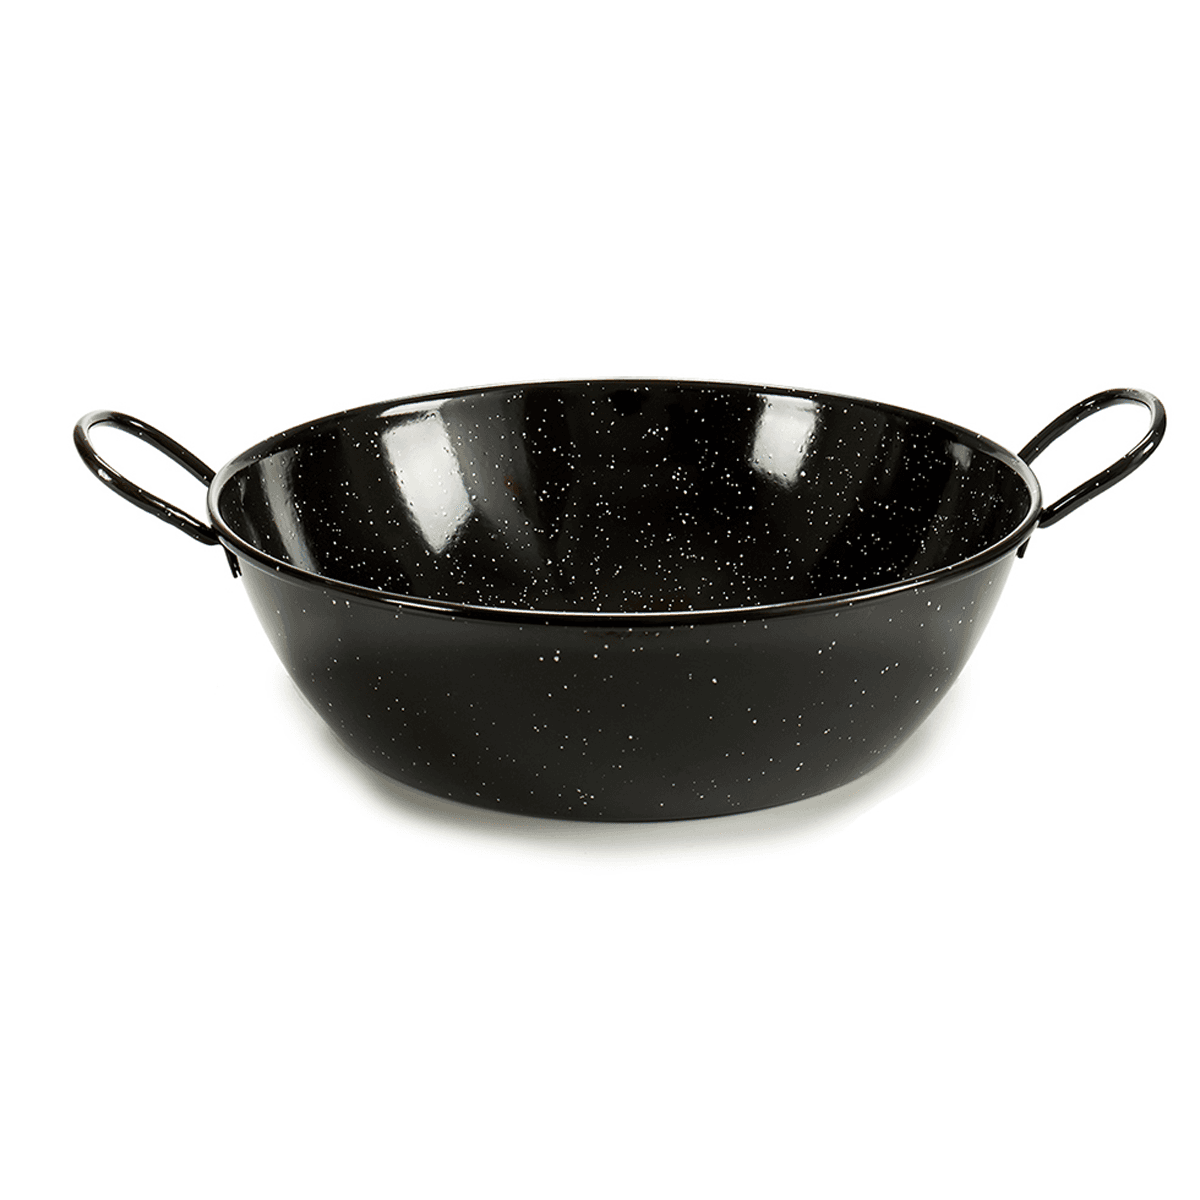 La Dehesa Black Deep Enameled Steel Frying Pan 24 cm